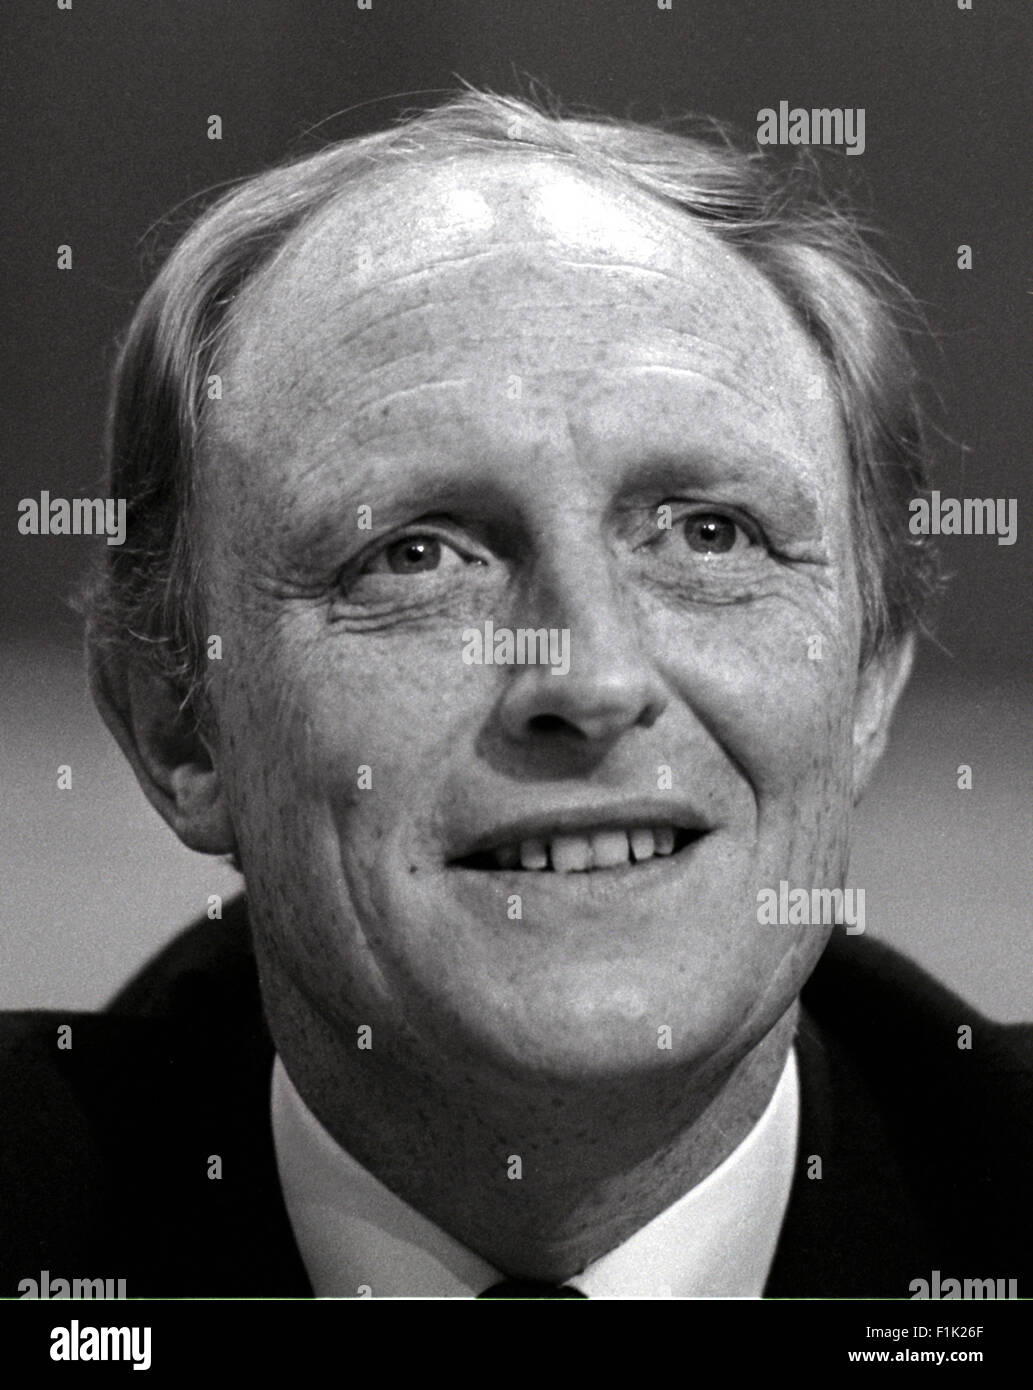 Neil Kinnock Signore Kinnock politico del lavoro 1984 Immagine di David Cole dalla stampa Ritratto archivi di servizio Foto Stock